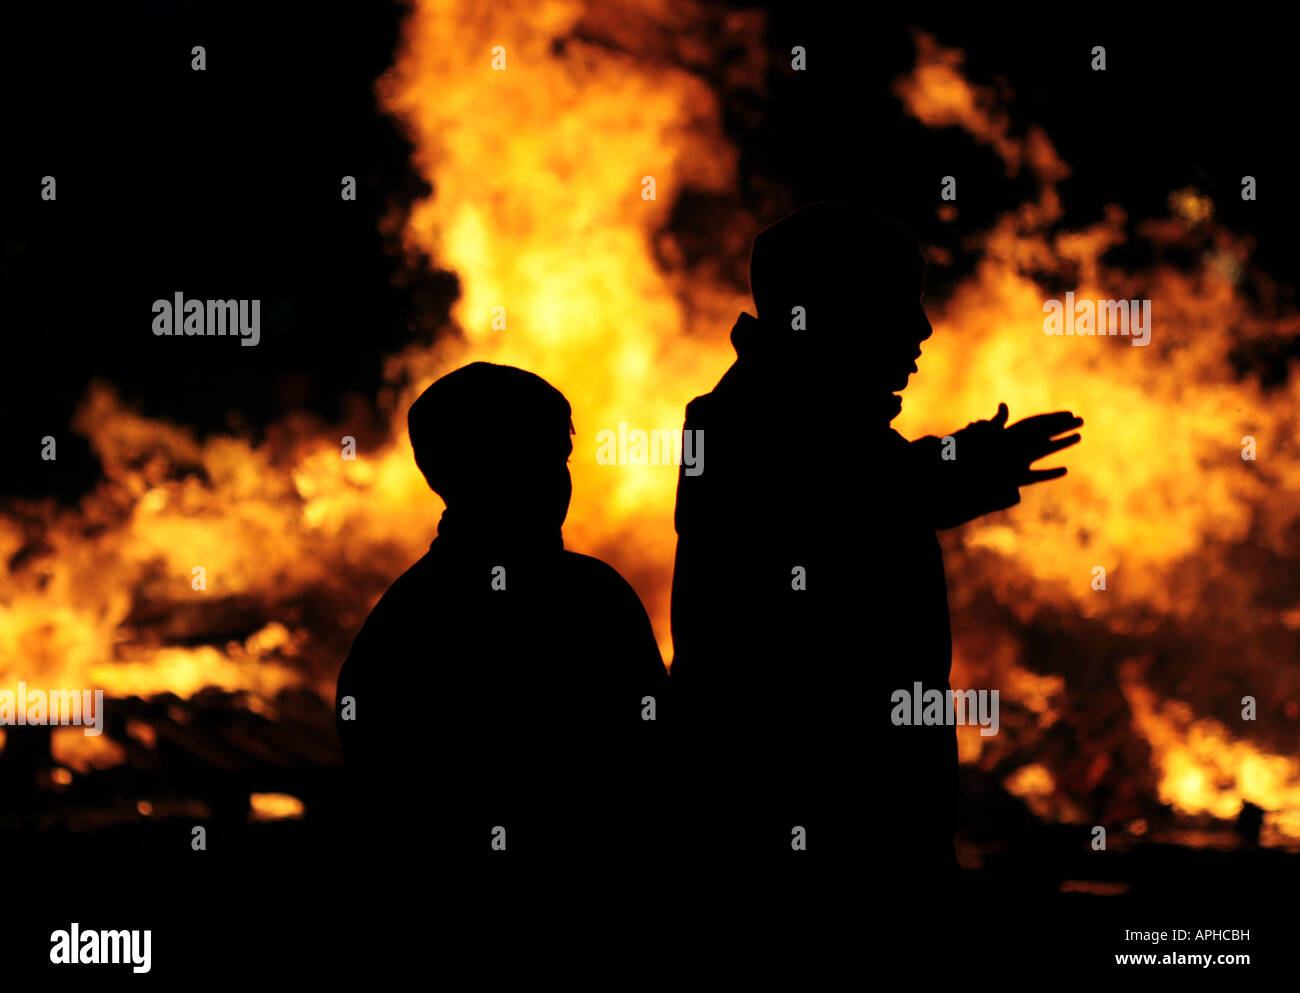 Silhouette von zwei Menschen, die gegen eines brennenden Feuers Stockfoto